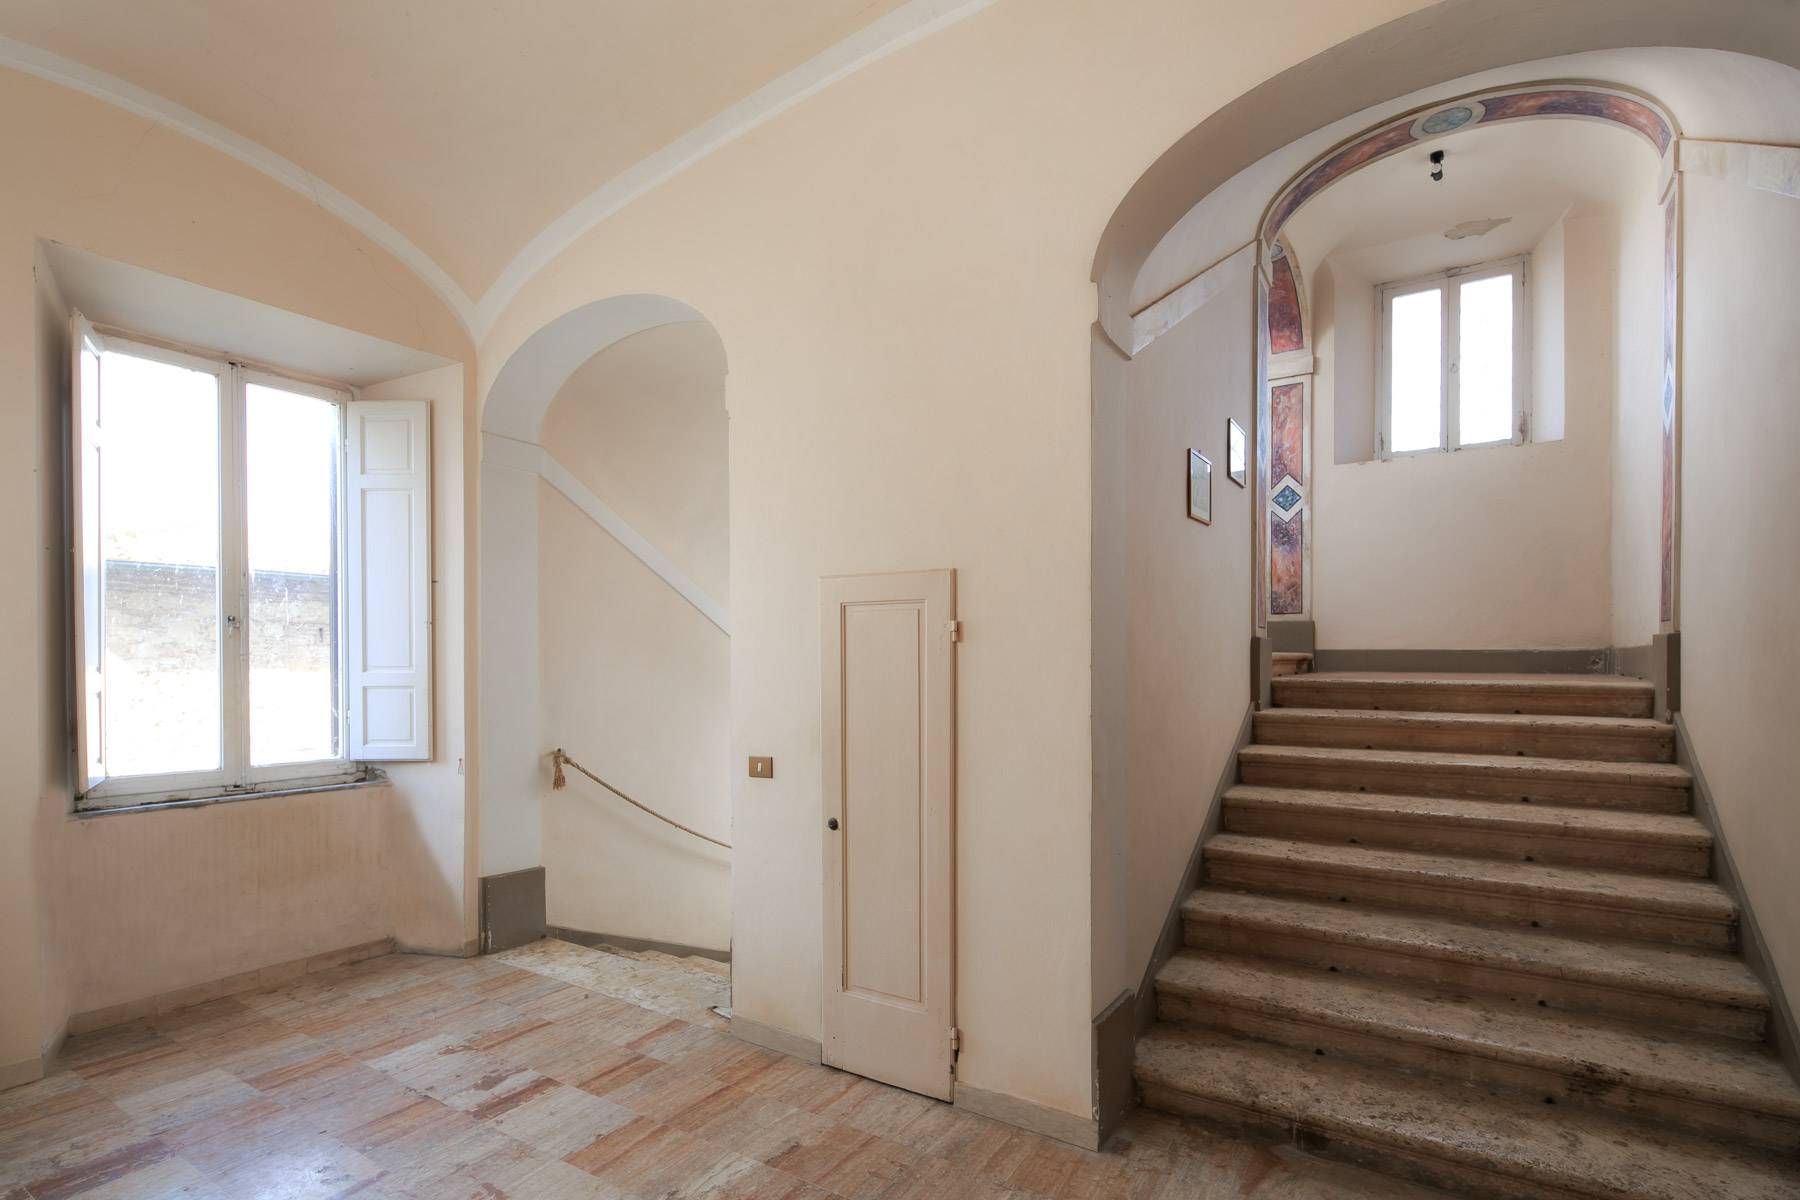 Villa in Vendita a Montepulciano: 5 locali, 2400 mq - Foto 21